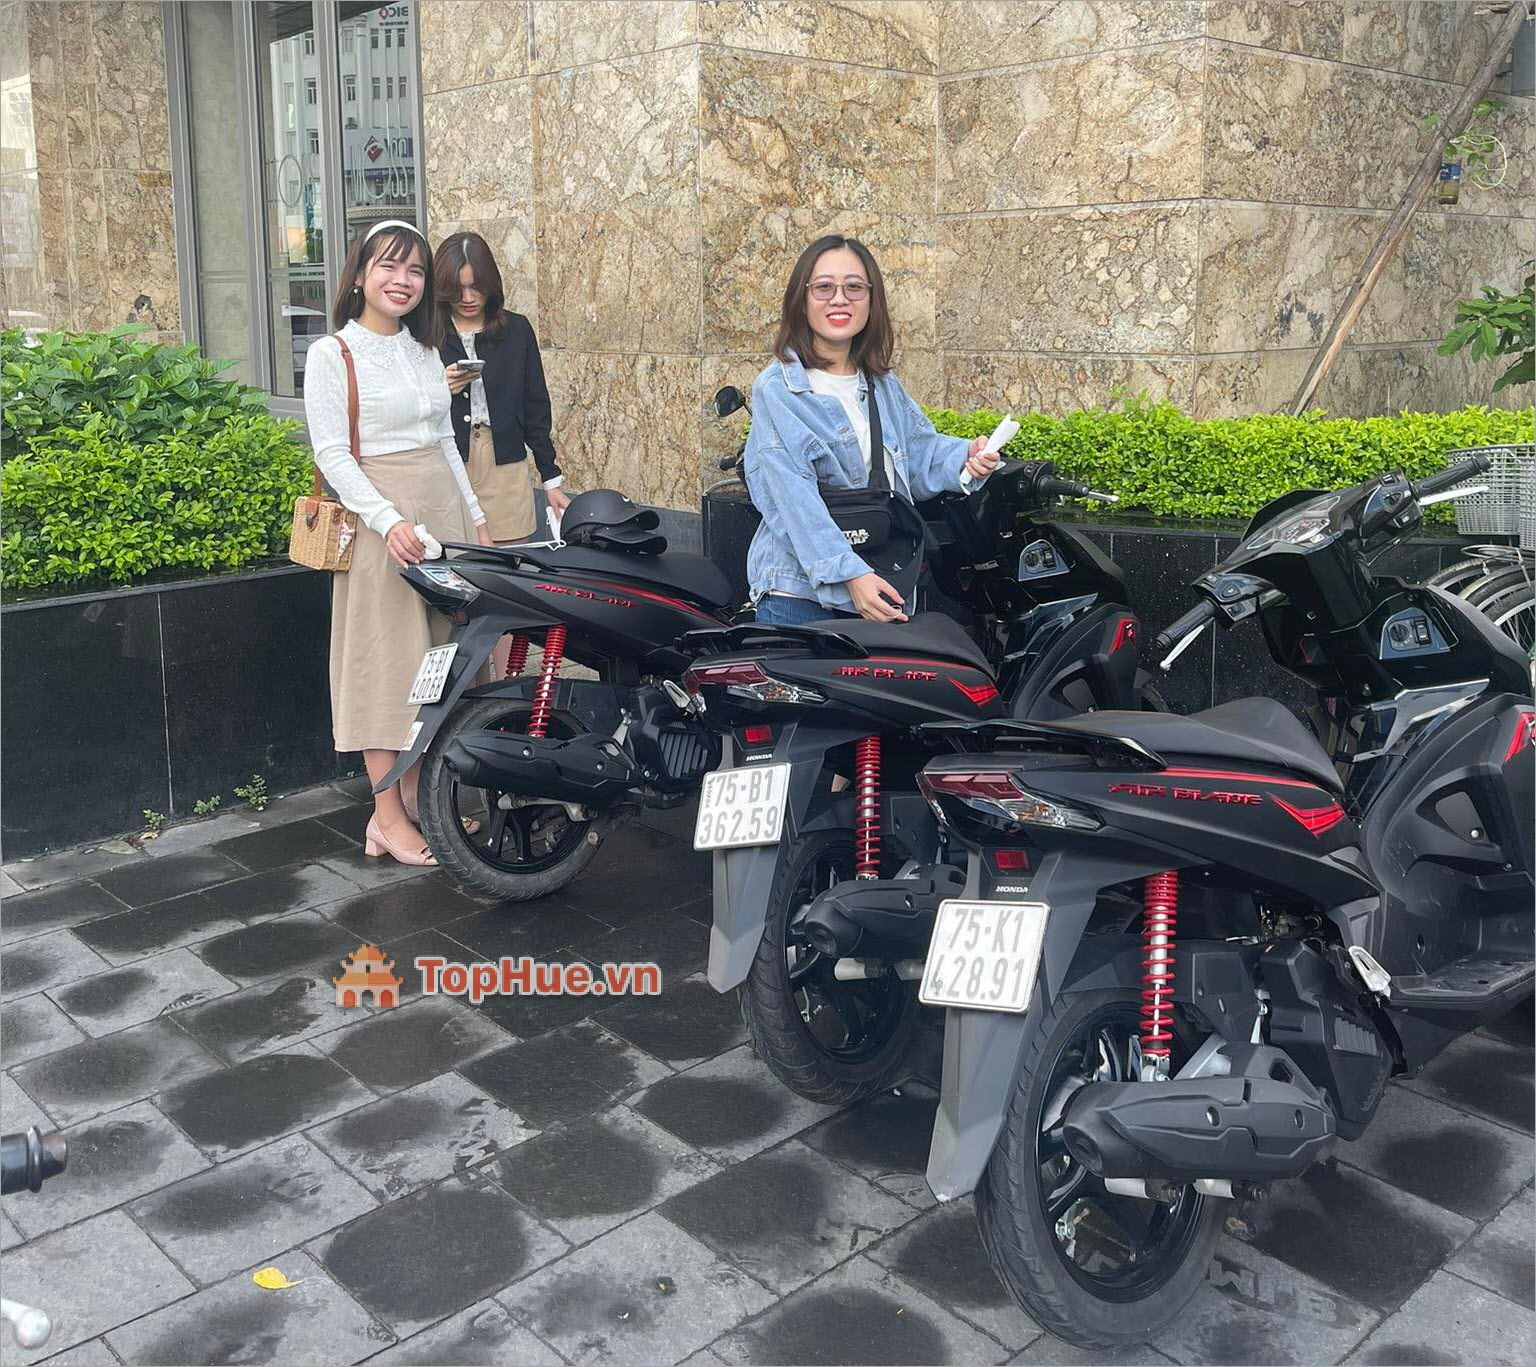 K2 Motorent – Chuyên cho thuê xe máy tại Huế